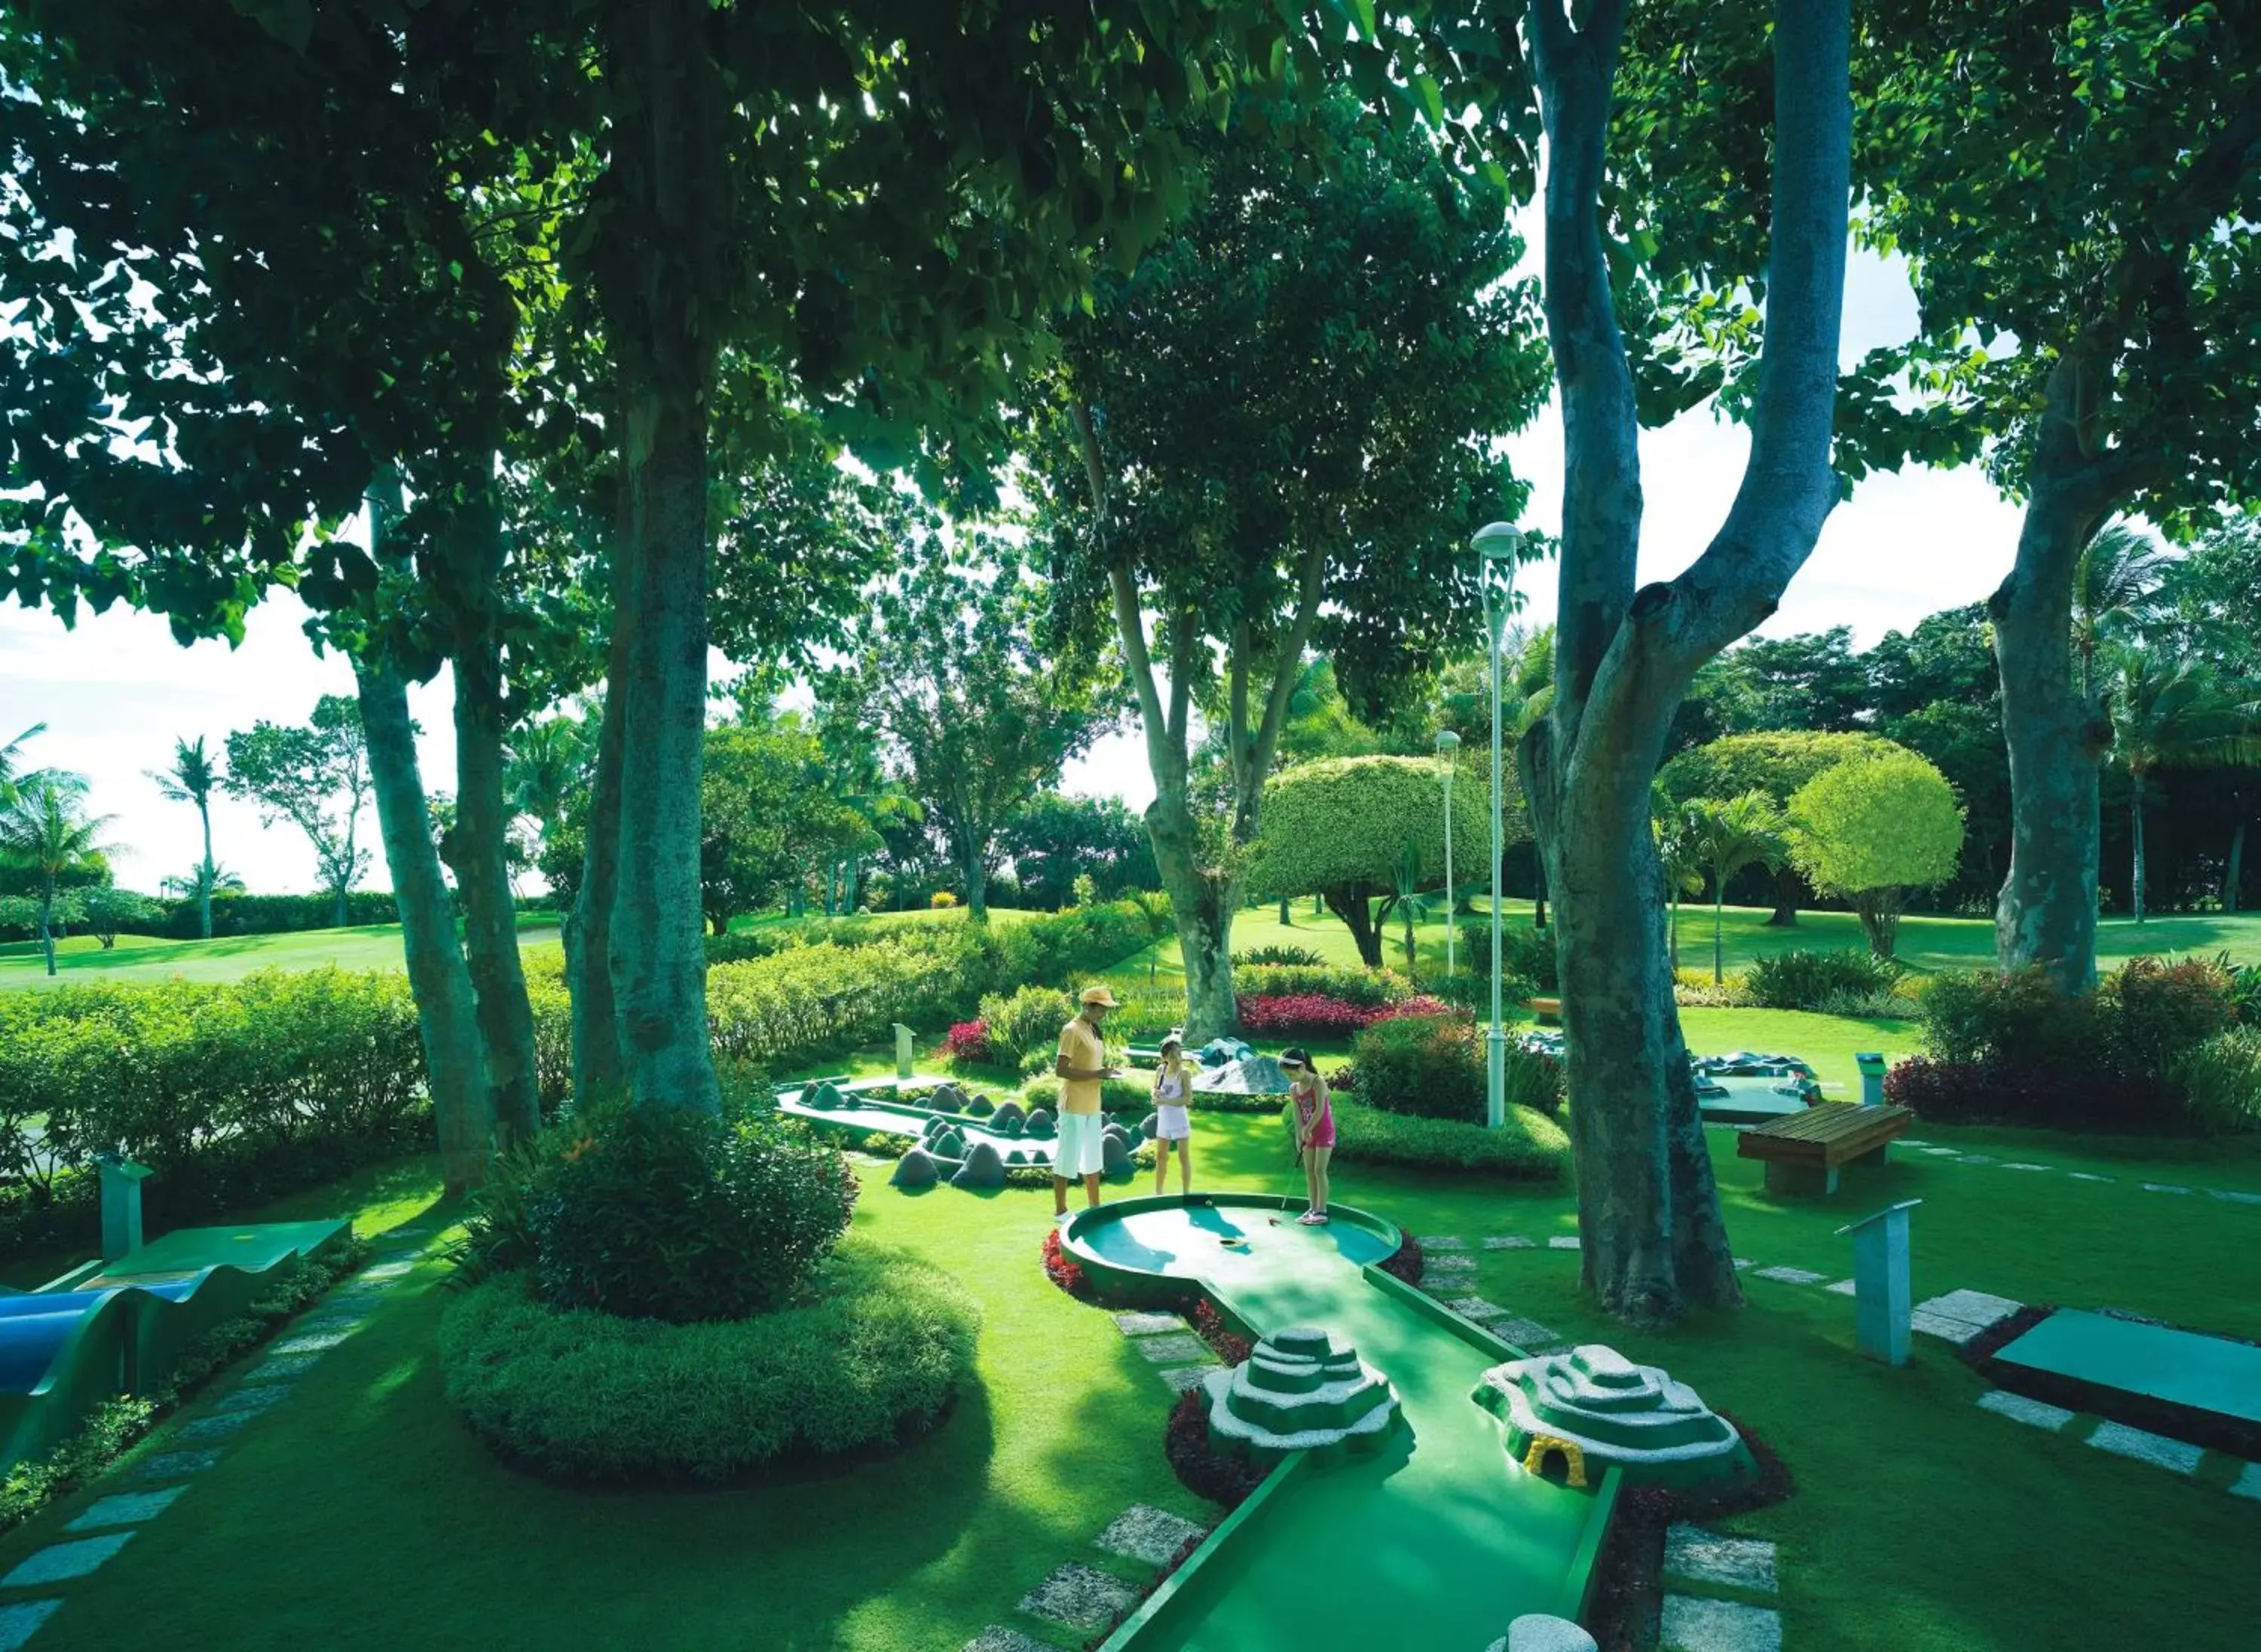 Area and facilities, Pool View in Shangri-La Mactan, Cebu